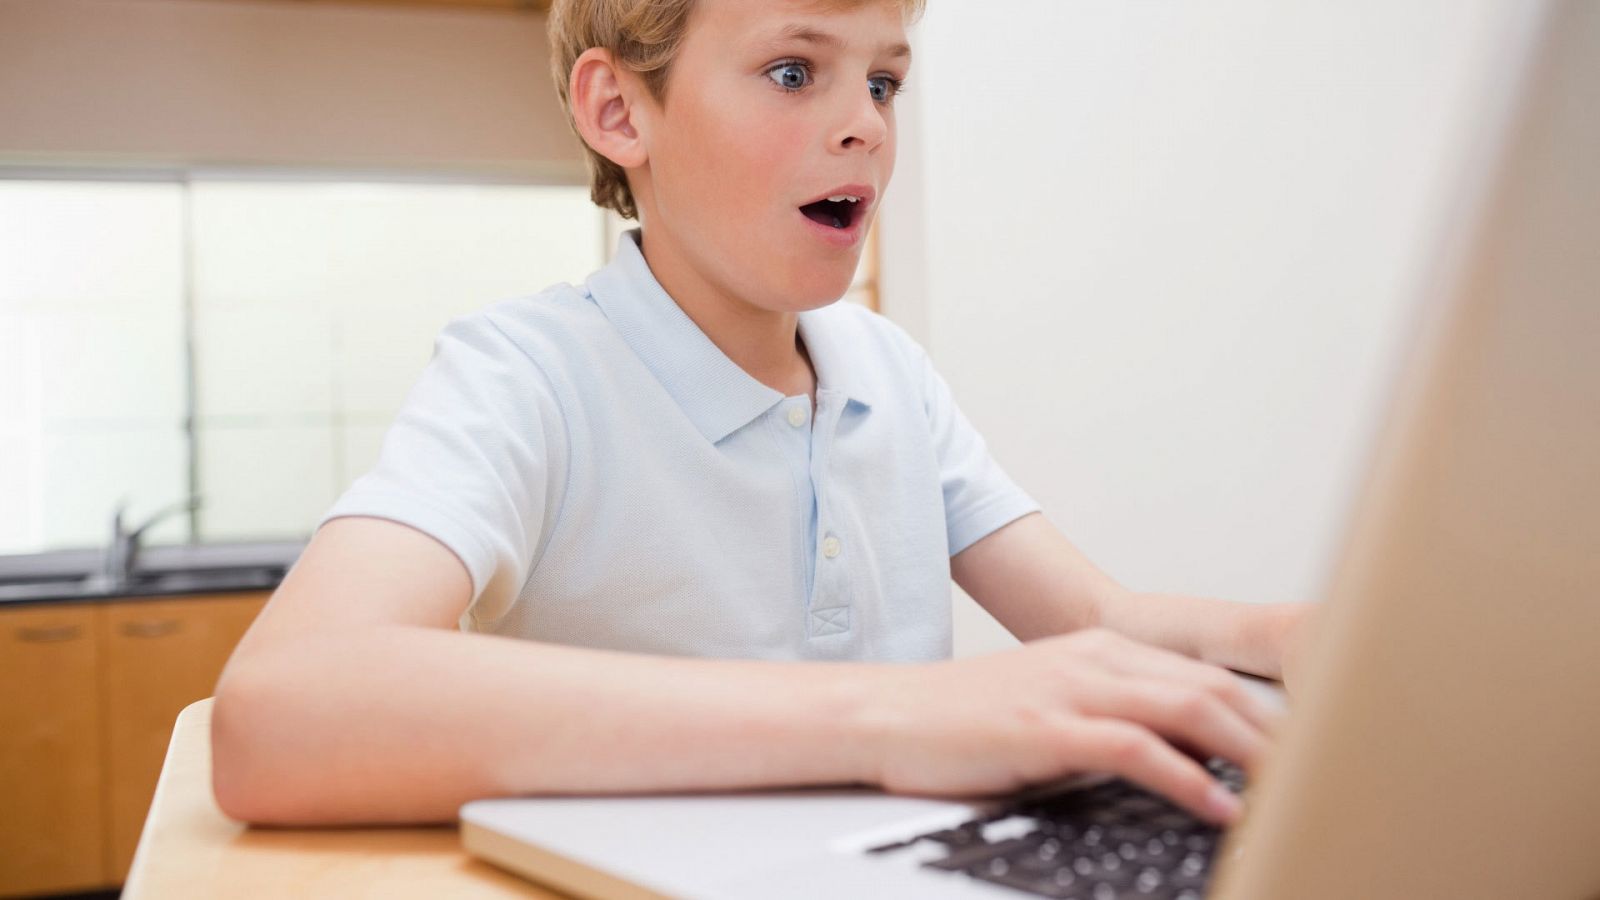 Un niño juega en un ordenador portáitl